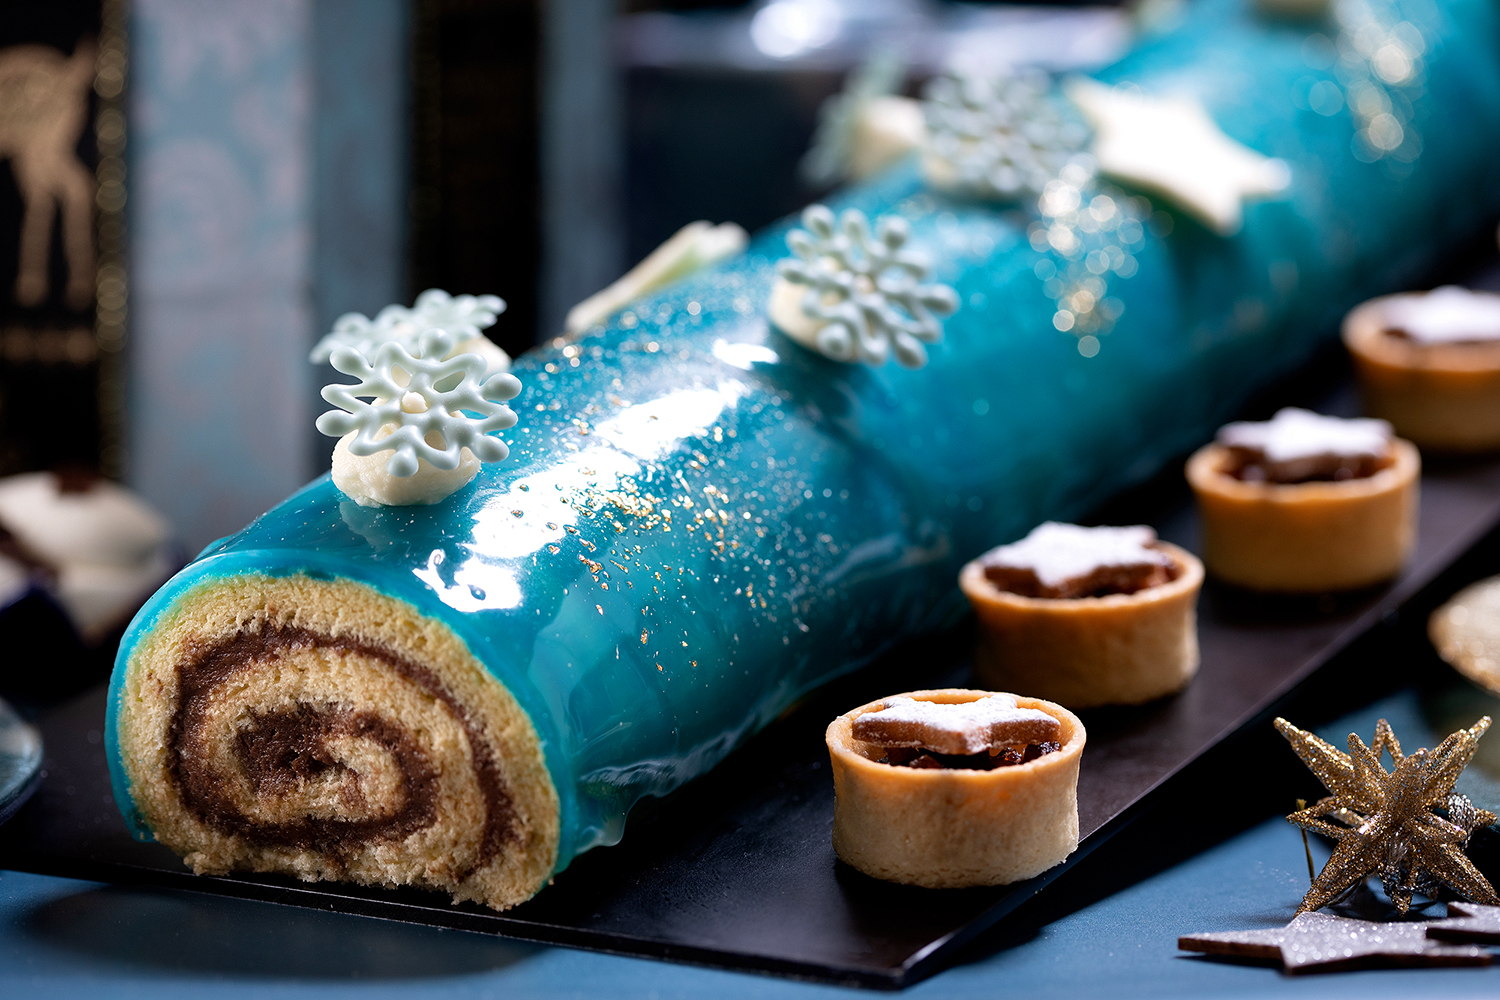 色鮮やかな真っ青なケーキも ヒルトン福岡シーホーク 煌めく星空への招待状 Sparkle Christmas 開催 Emo Miu エモミュー